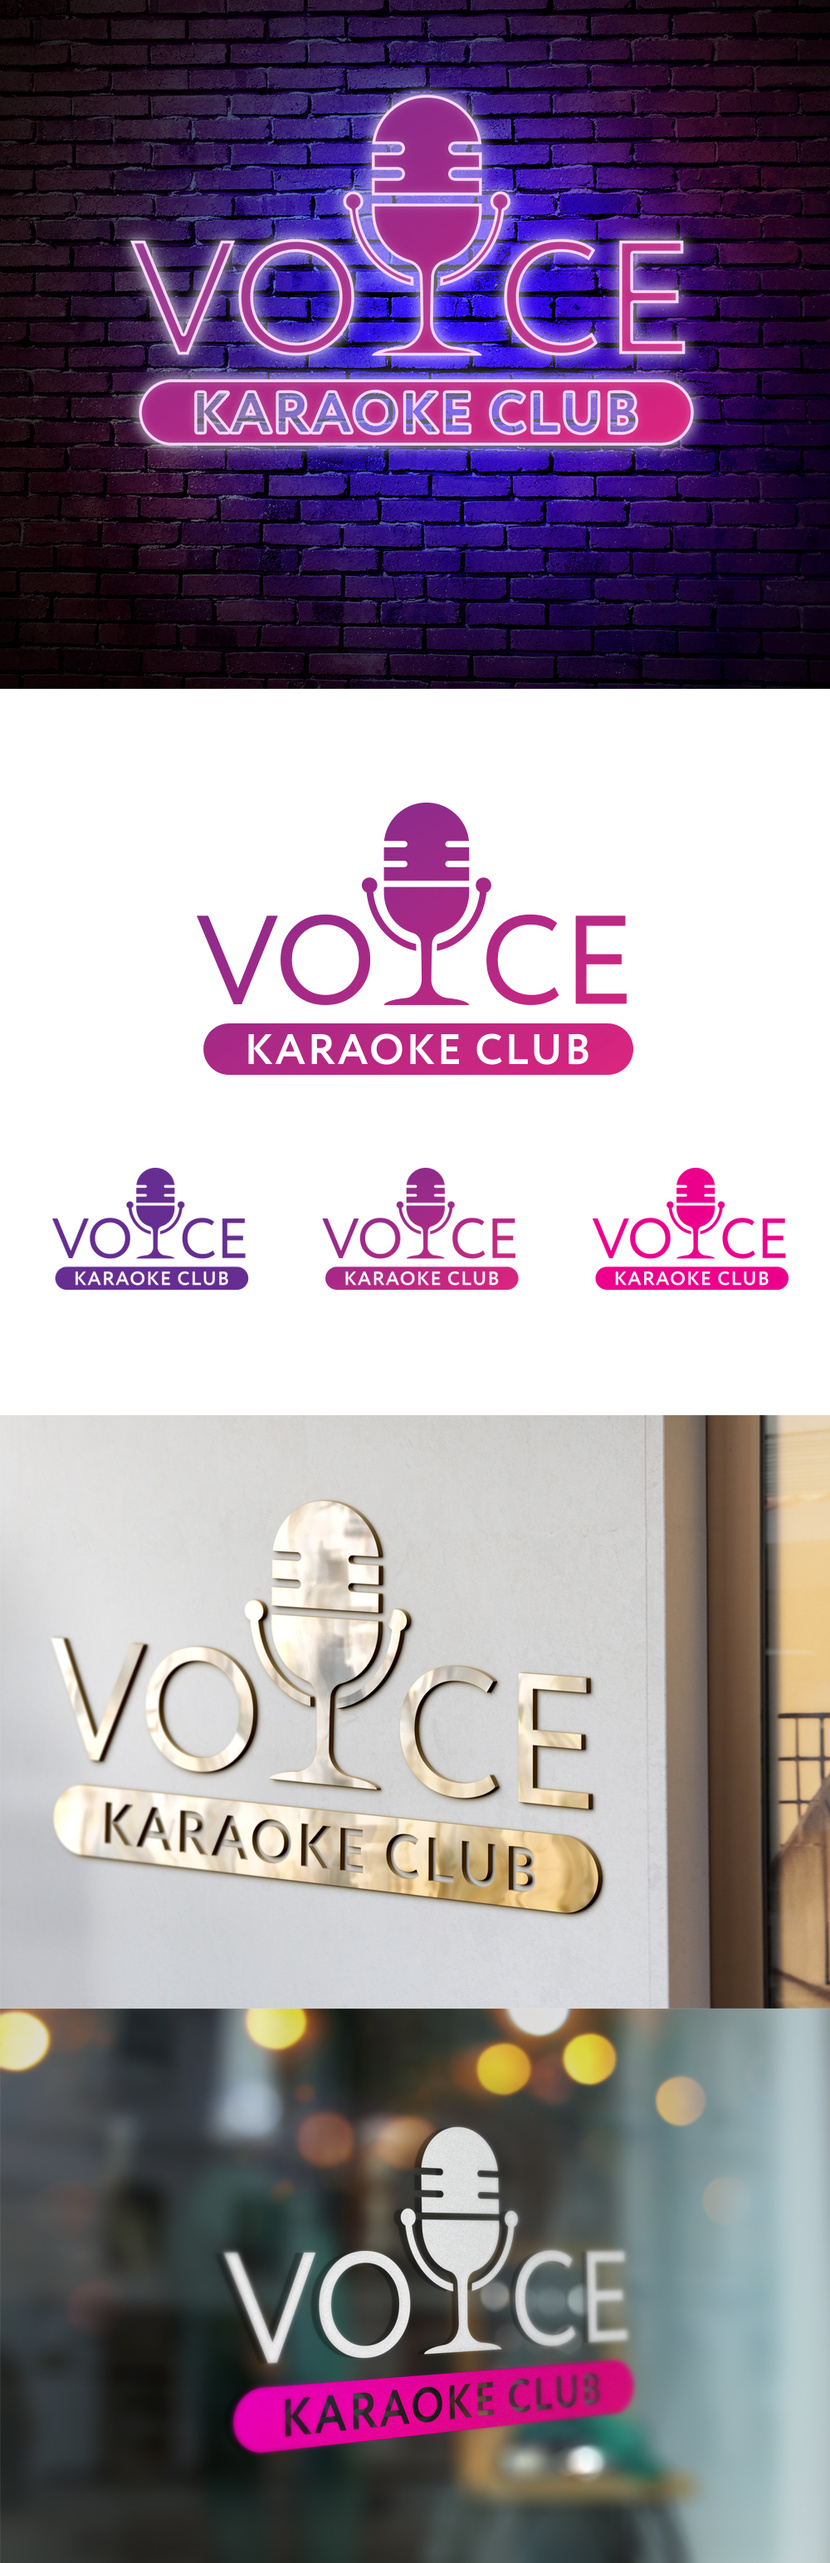 Логотип для караоке Voice